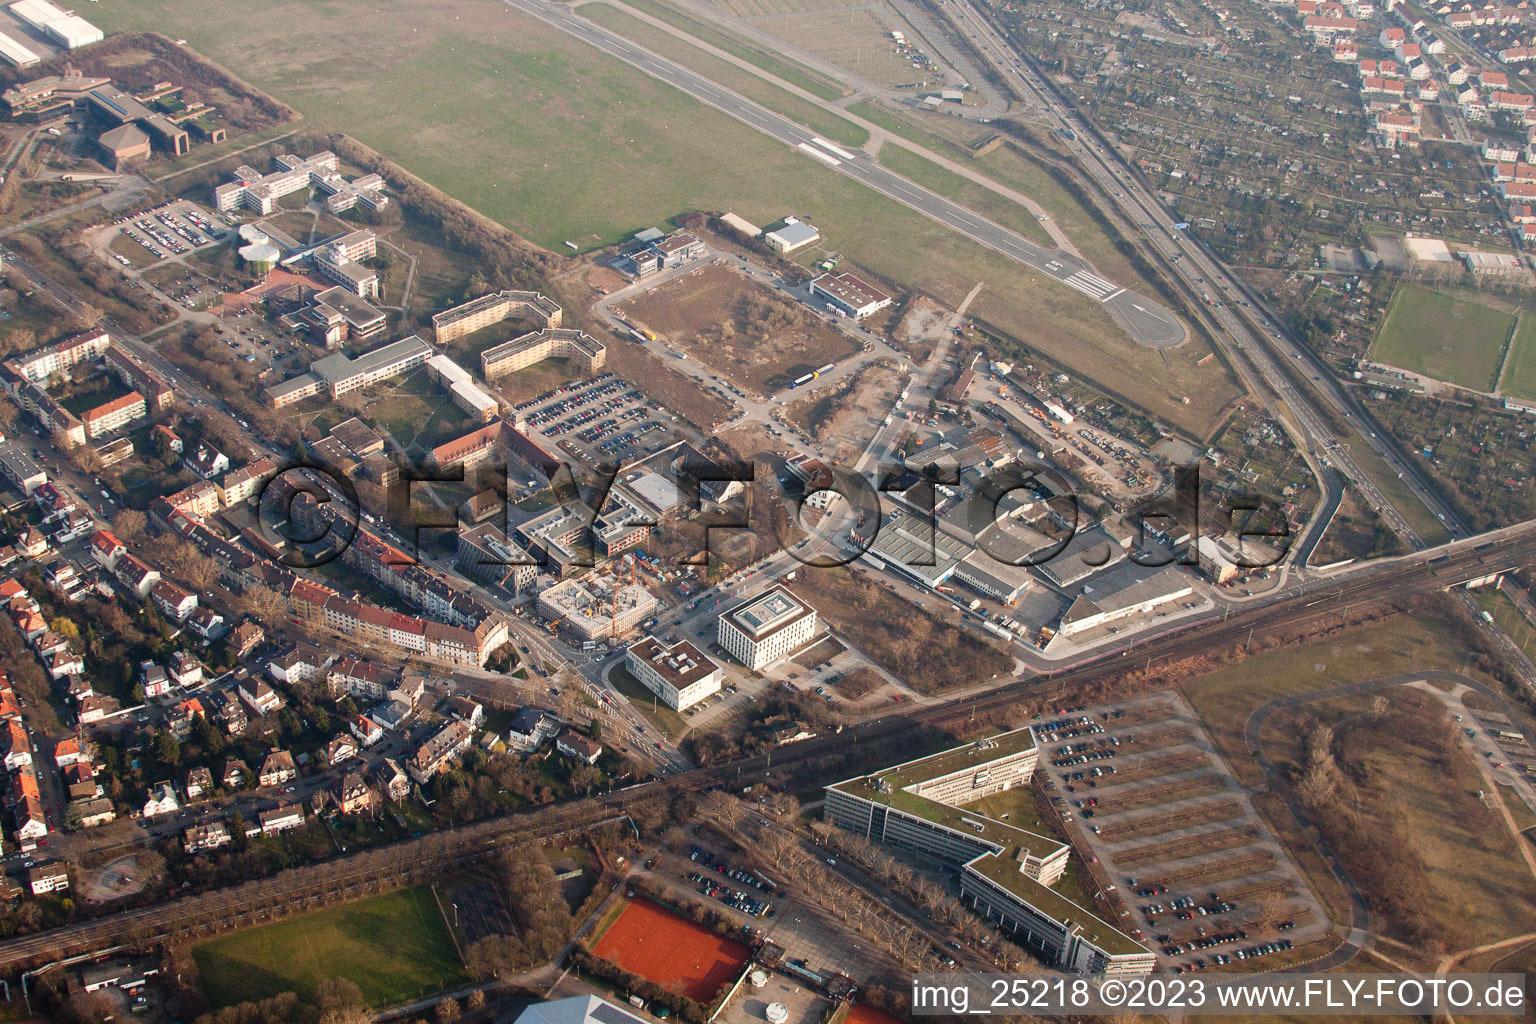 Vue aérienne de CAMELOT à le quartier Oststadt in Mannheim dans le département Bade-Wurtemberg, Allemagne